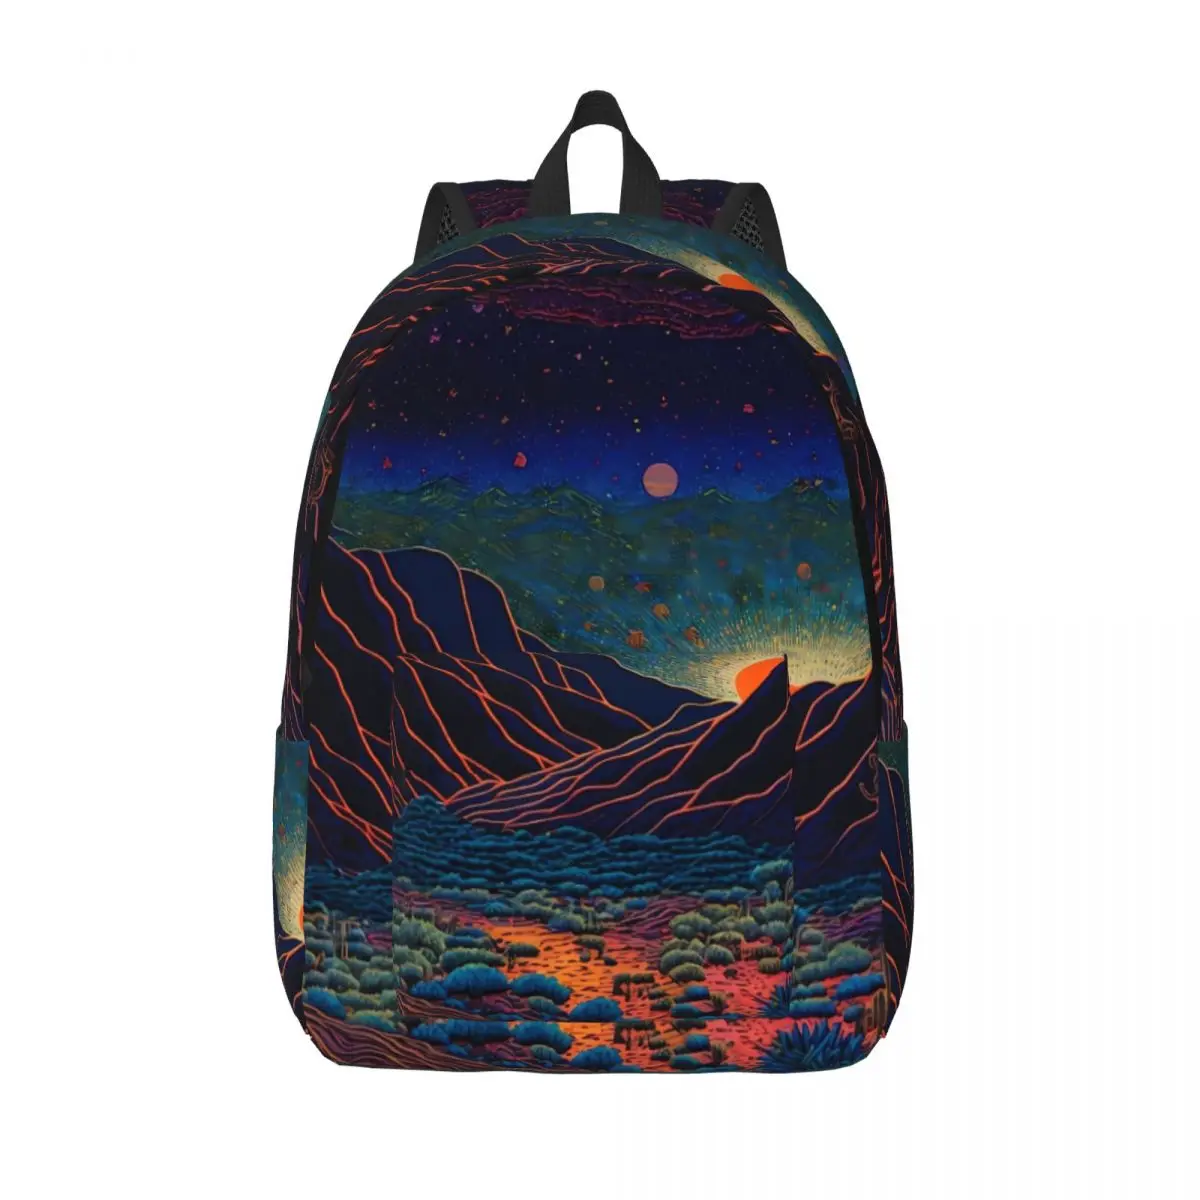 

Невада пустыня рюкзак мультфильм стиль уличный стиль рюкзаки мальчик девочка эстетические школьные сумки дизайн прочный рюкзак